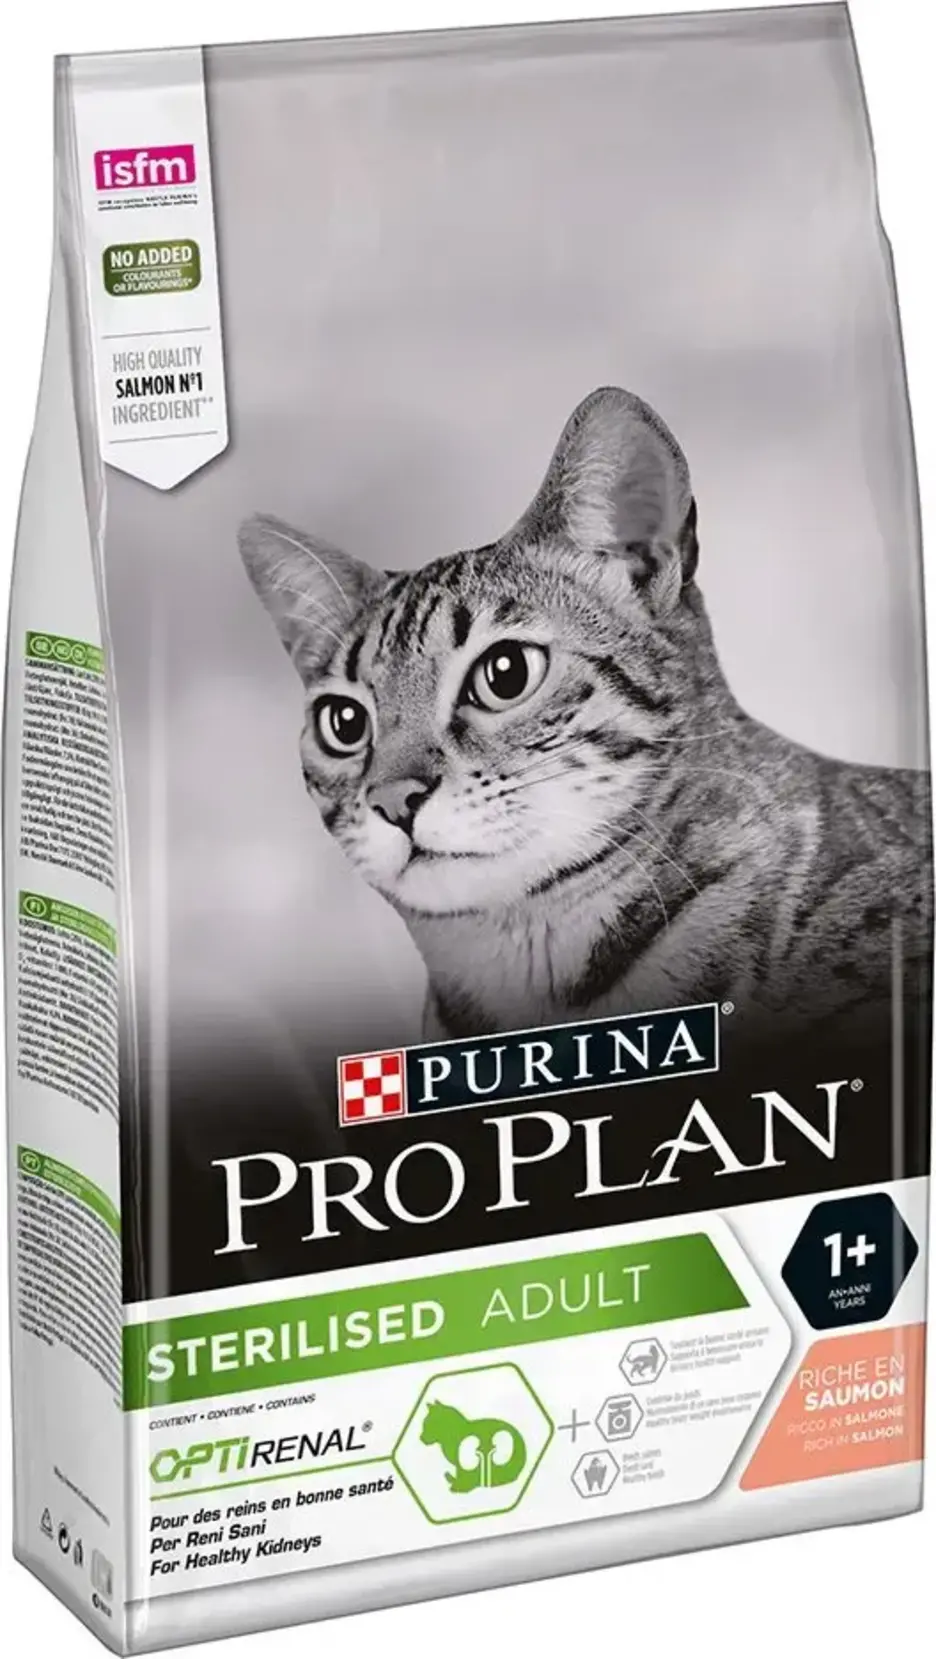 Purina Pro Plan Cat Sterilised Adult Optirenal Salmon 10 kg